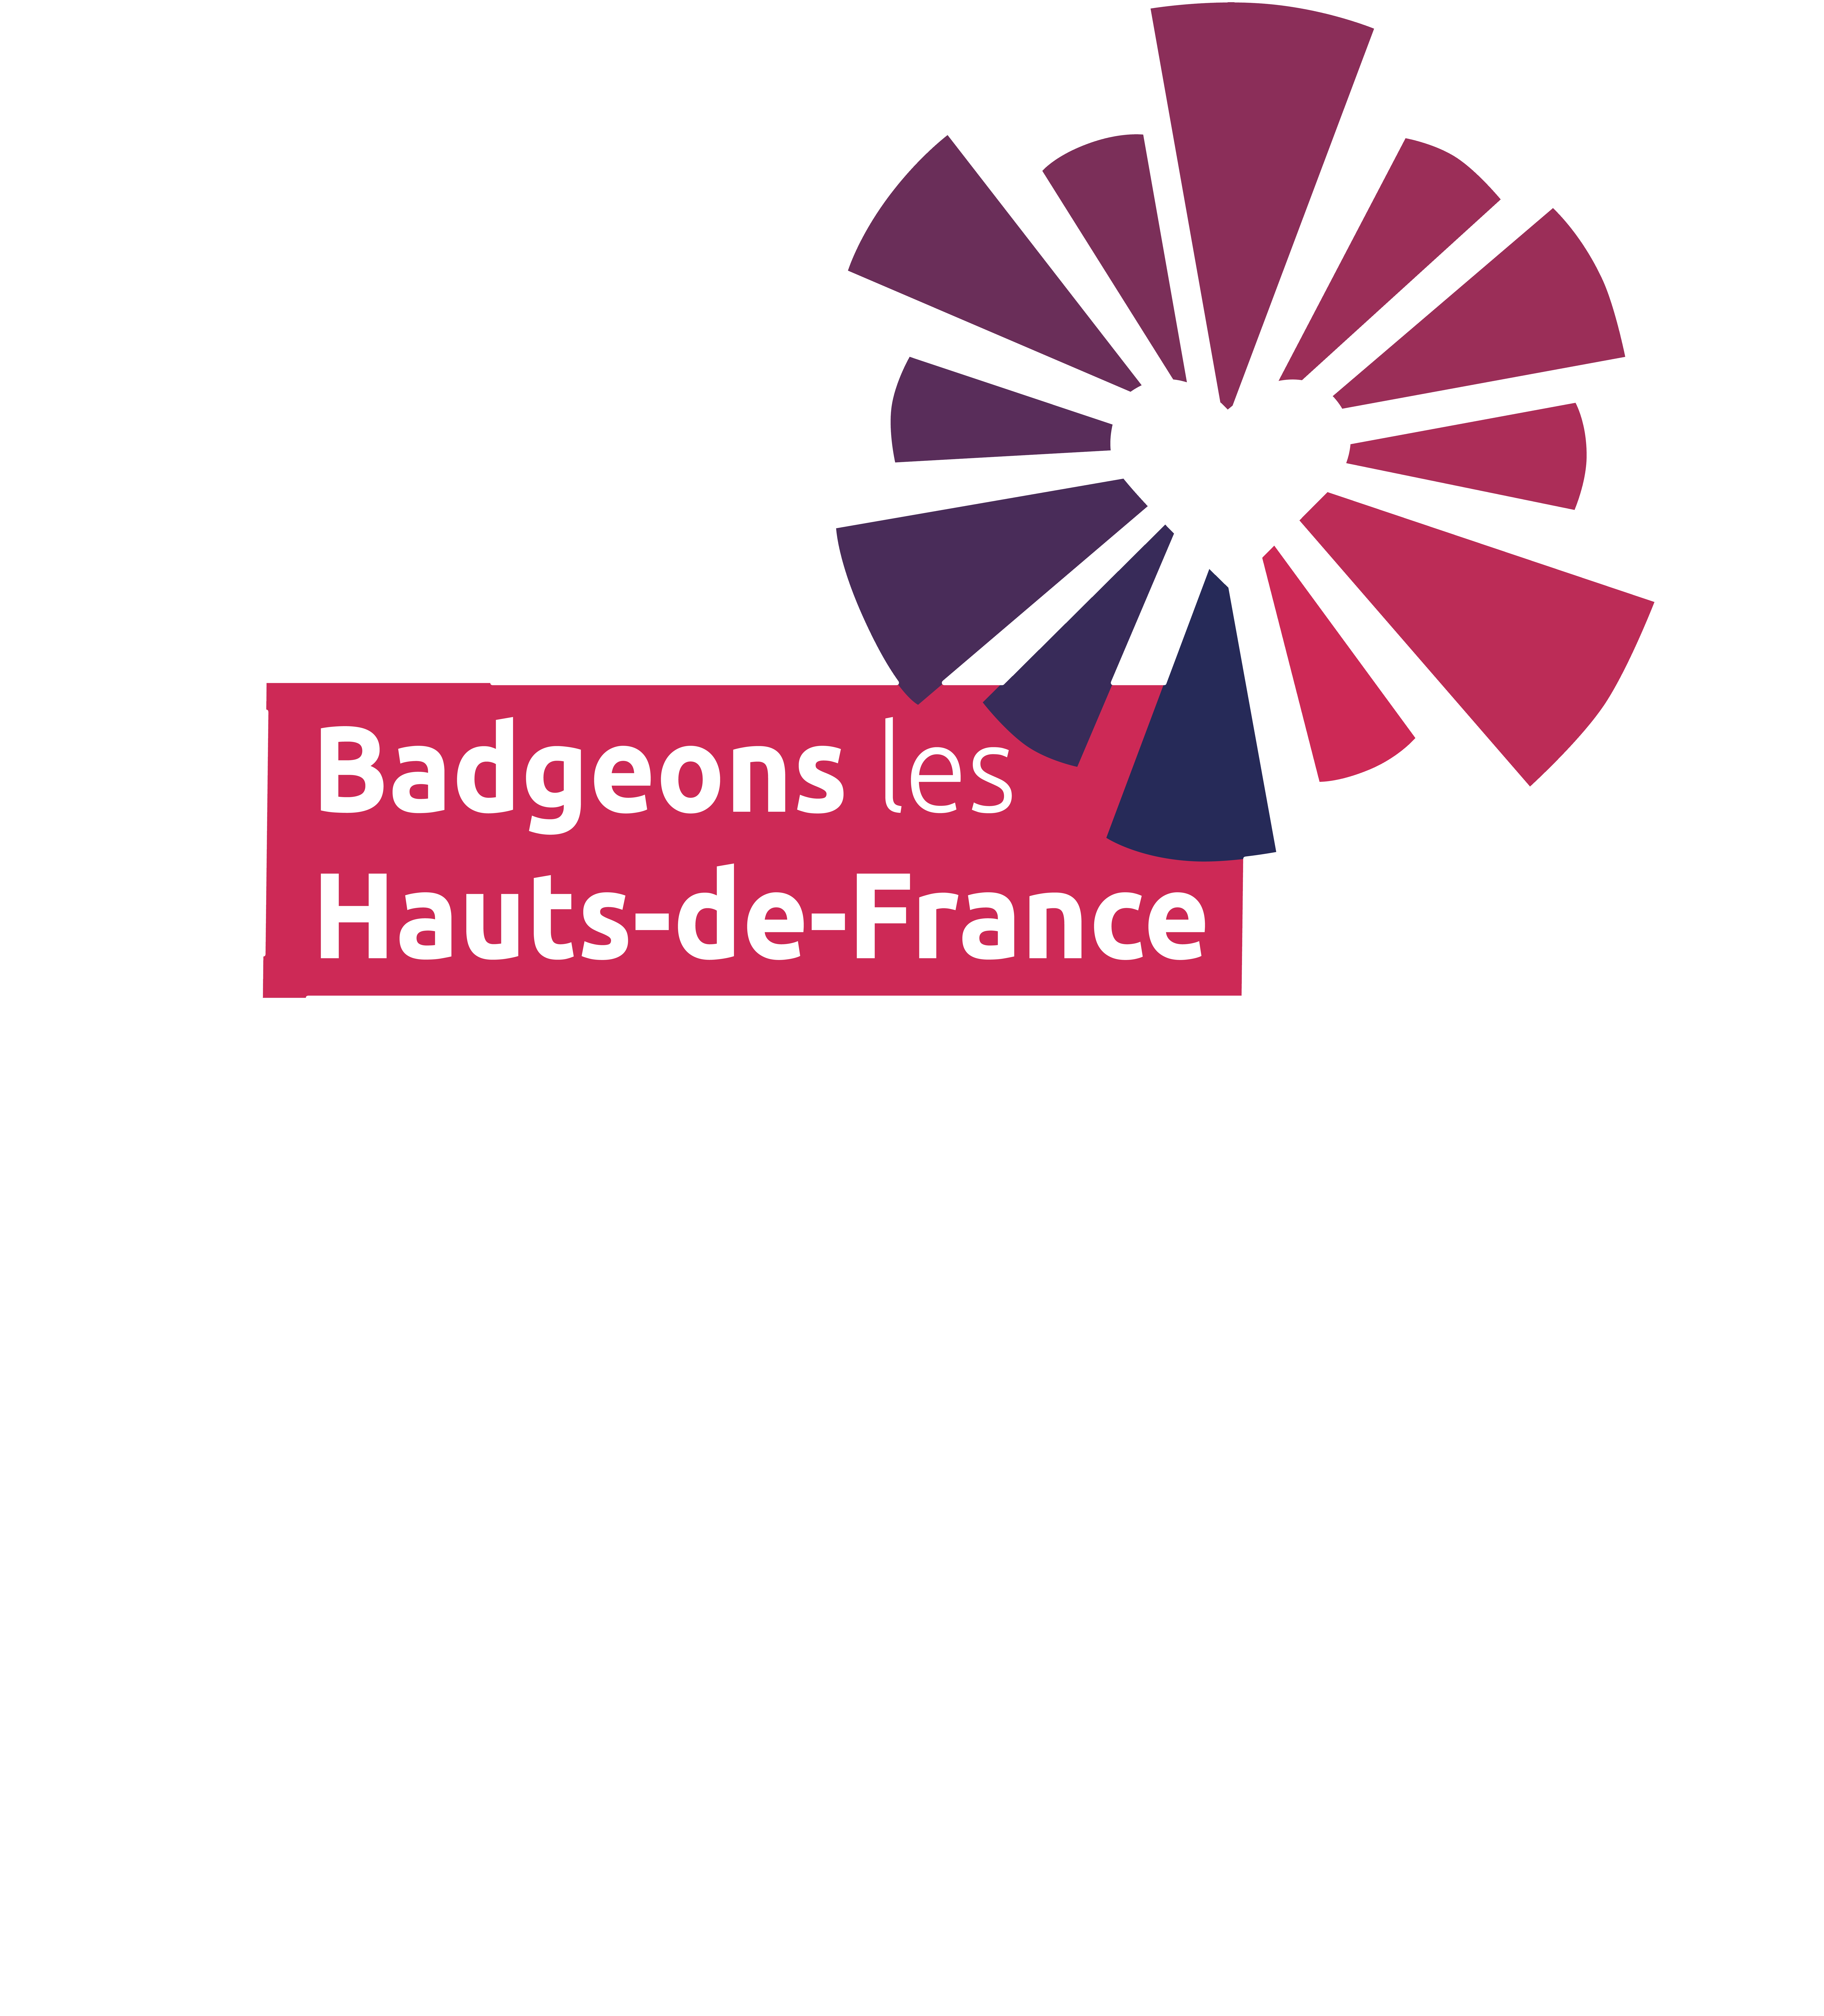 Badgeons les Hauts-de-France